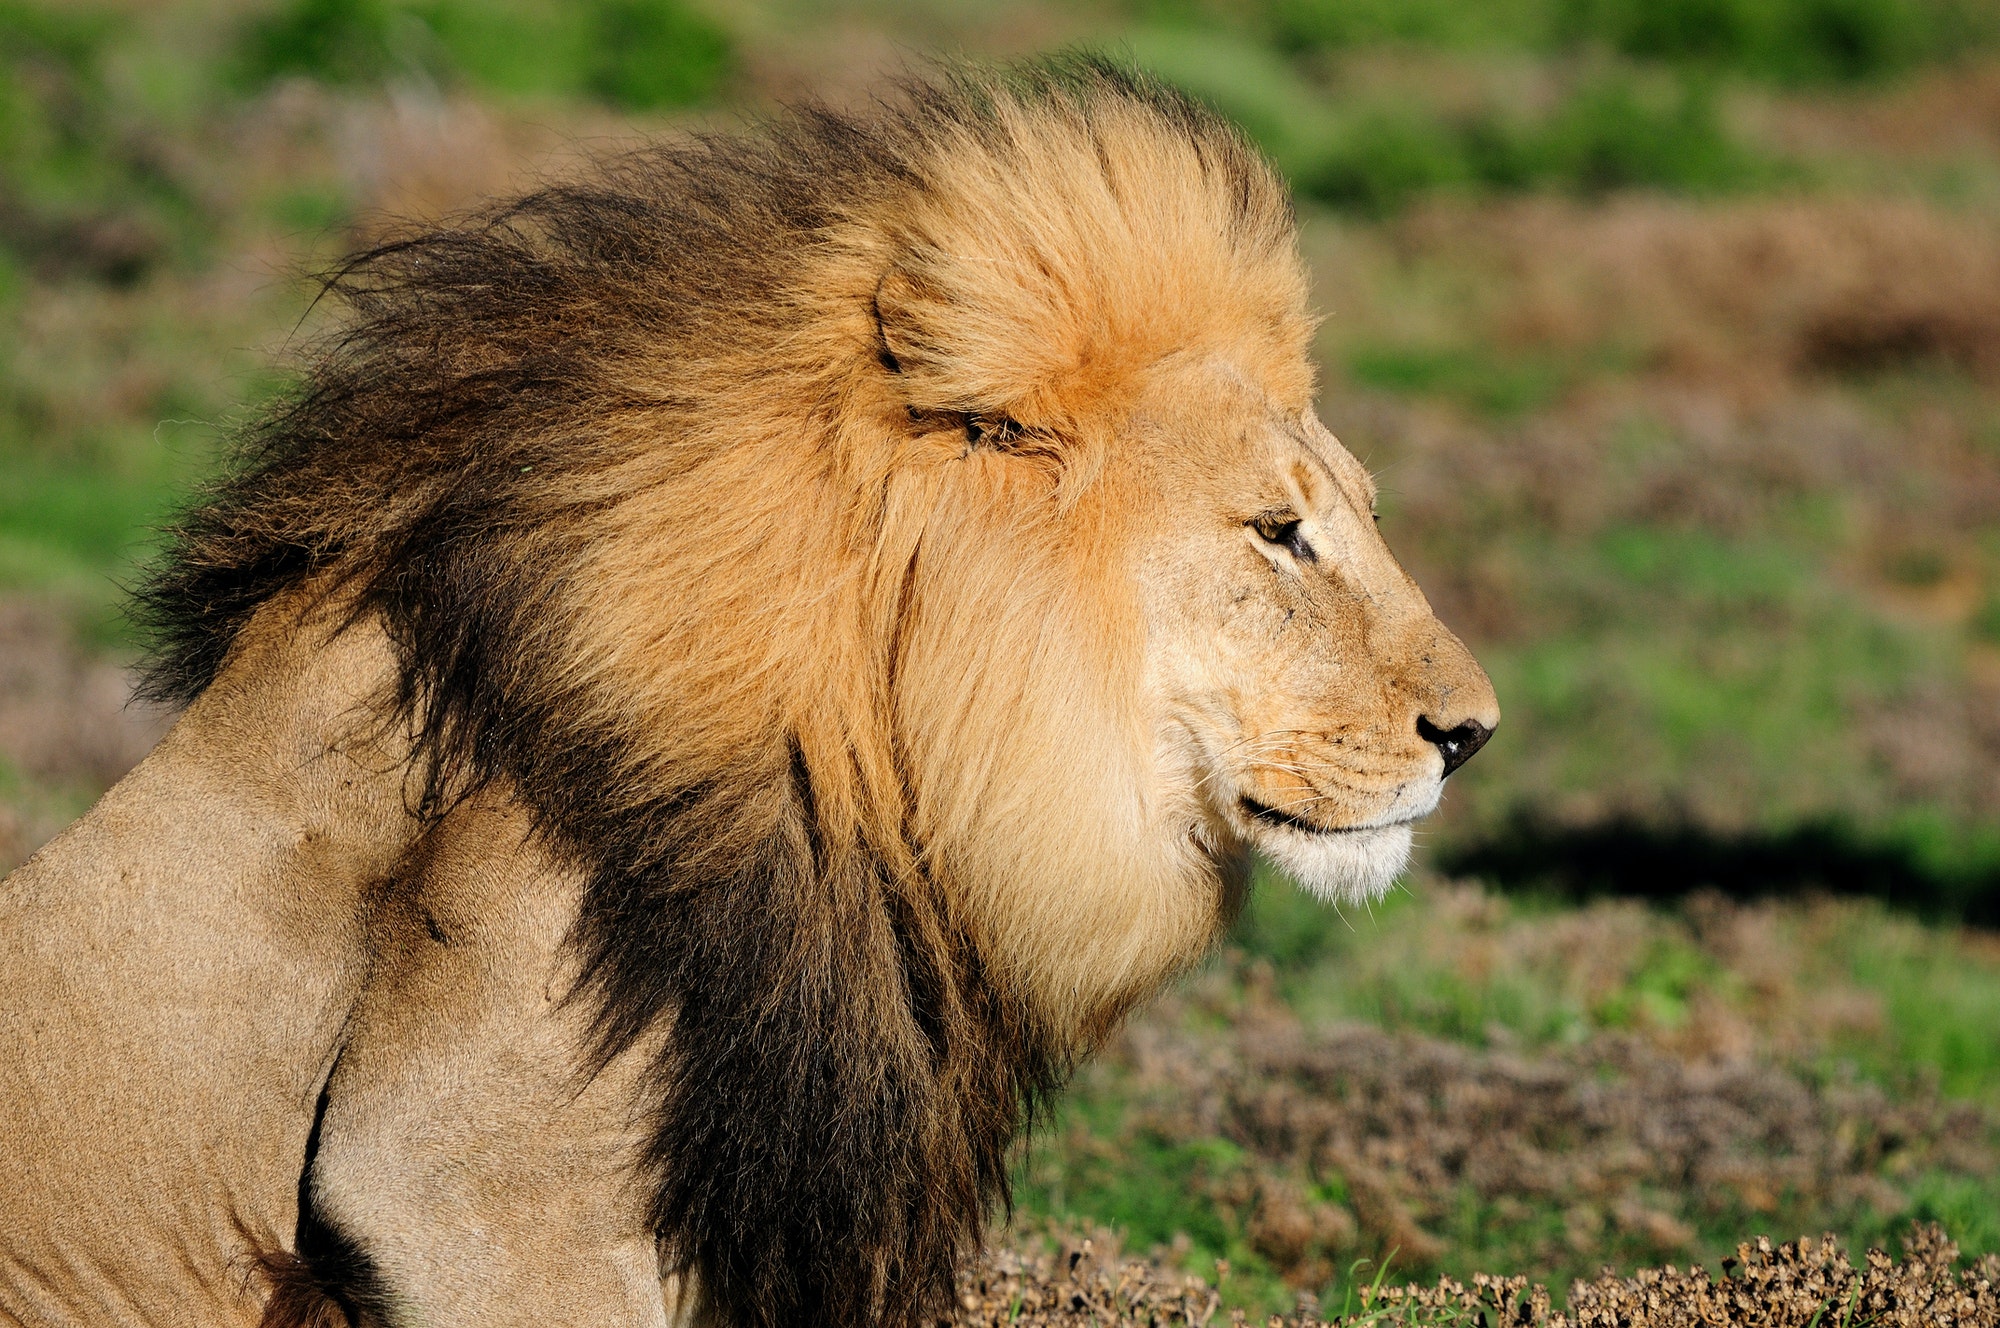 A Kalahari lion